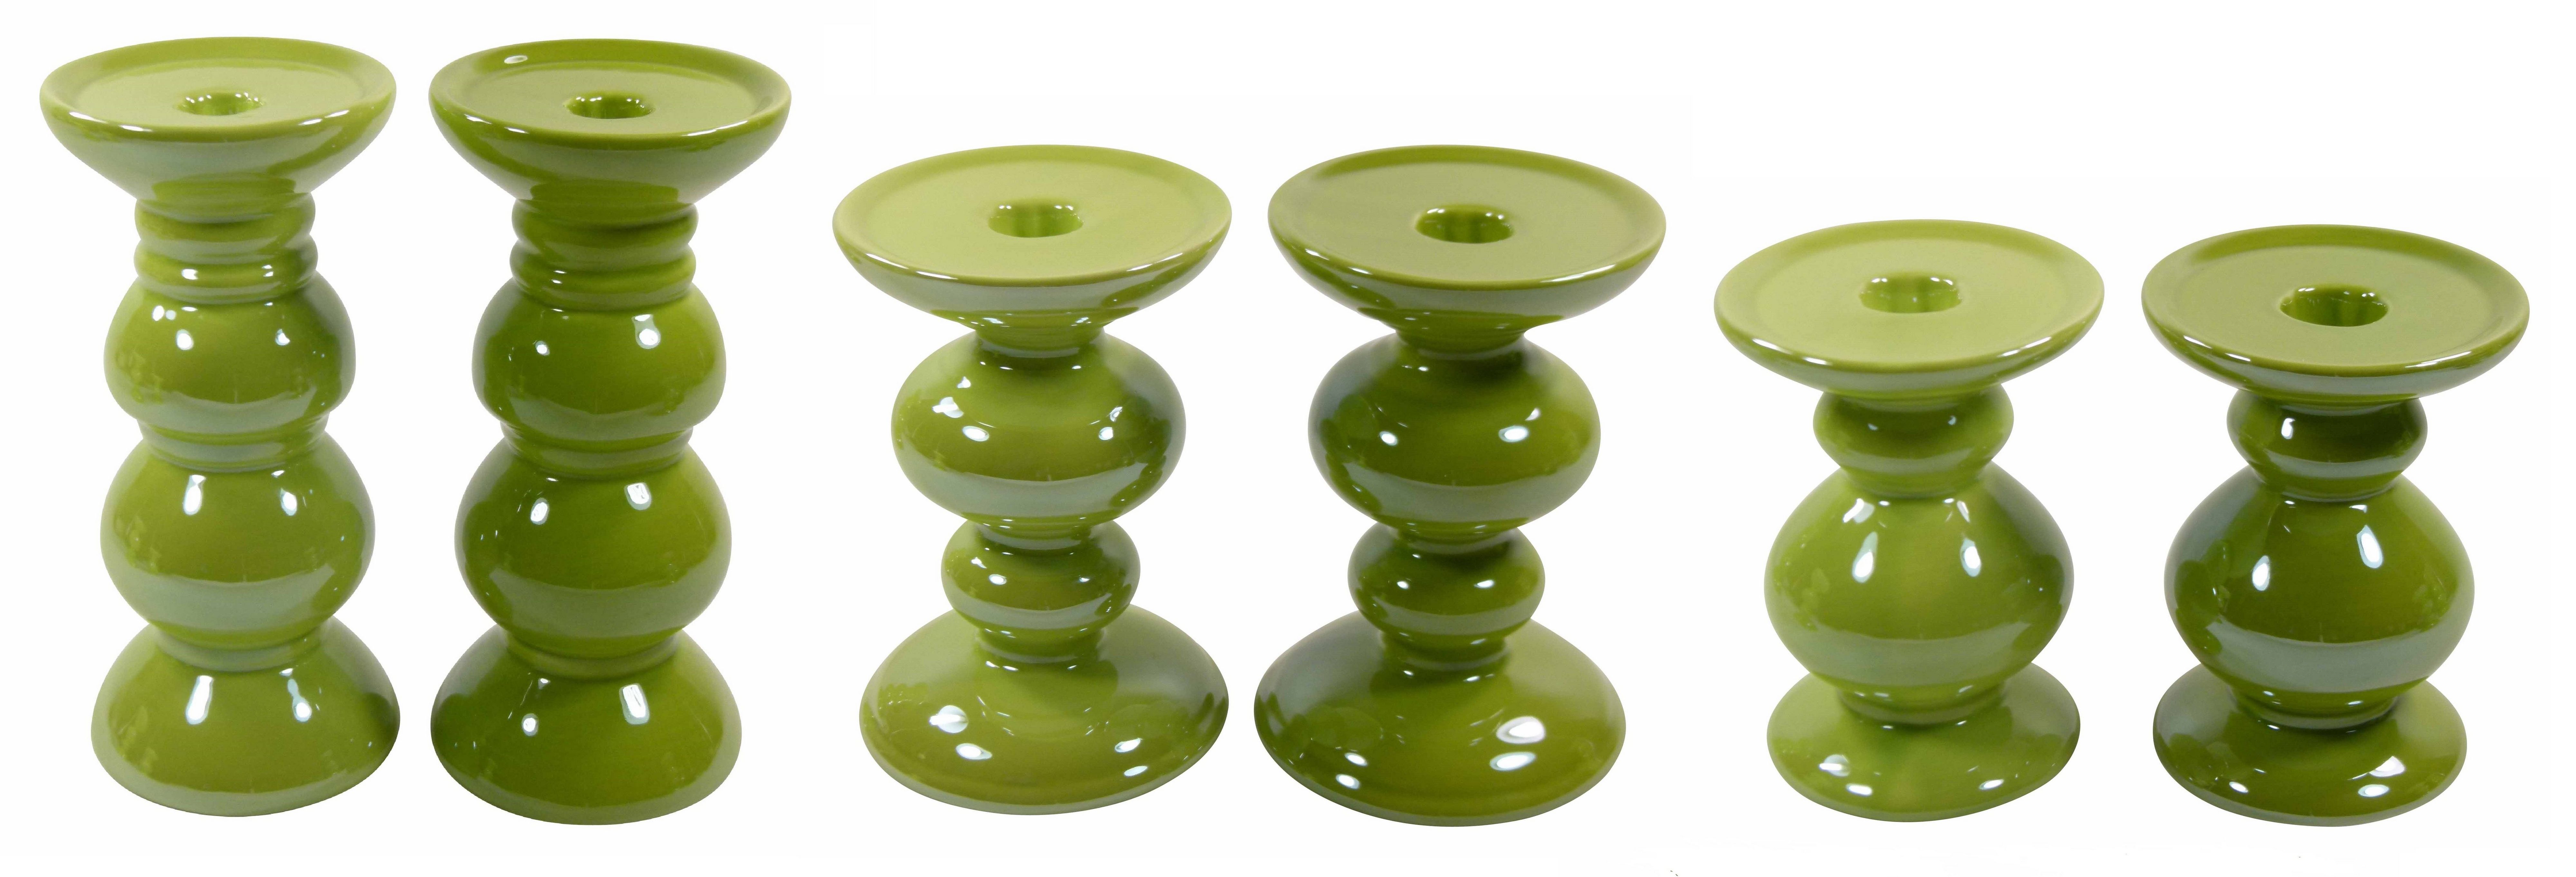 Aus St., 12cm-20cm, Kerzenhalter Sommer Keramik 2er-Set), GlasArt 2 Set Säulenform dunkelgrün, drei Frühling 2er Keramik-Kerzenhalter (Dekoset, hell- Größen und